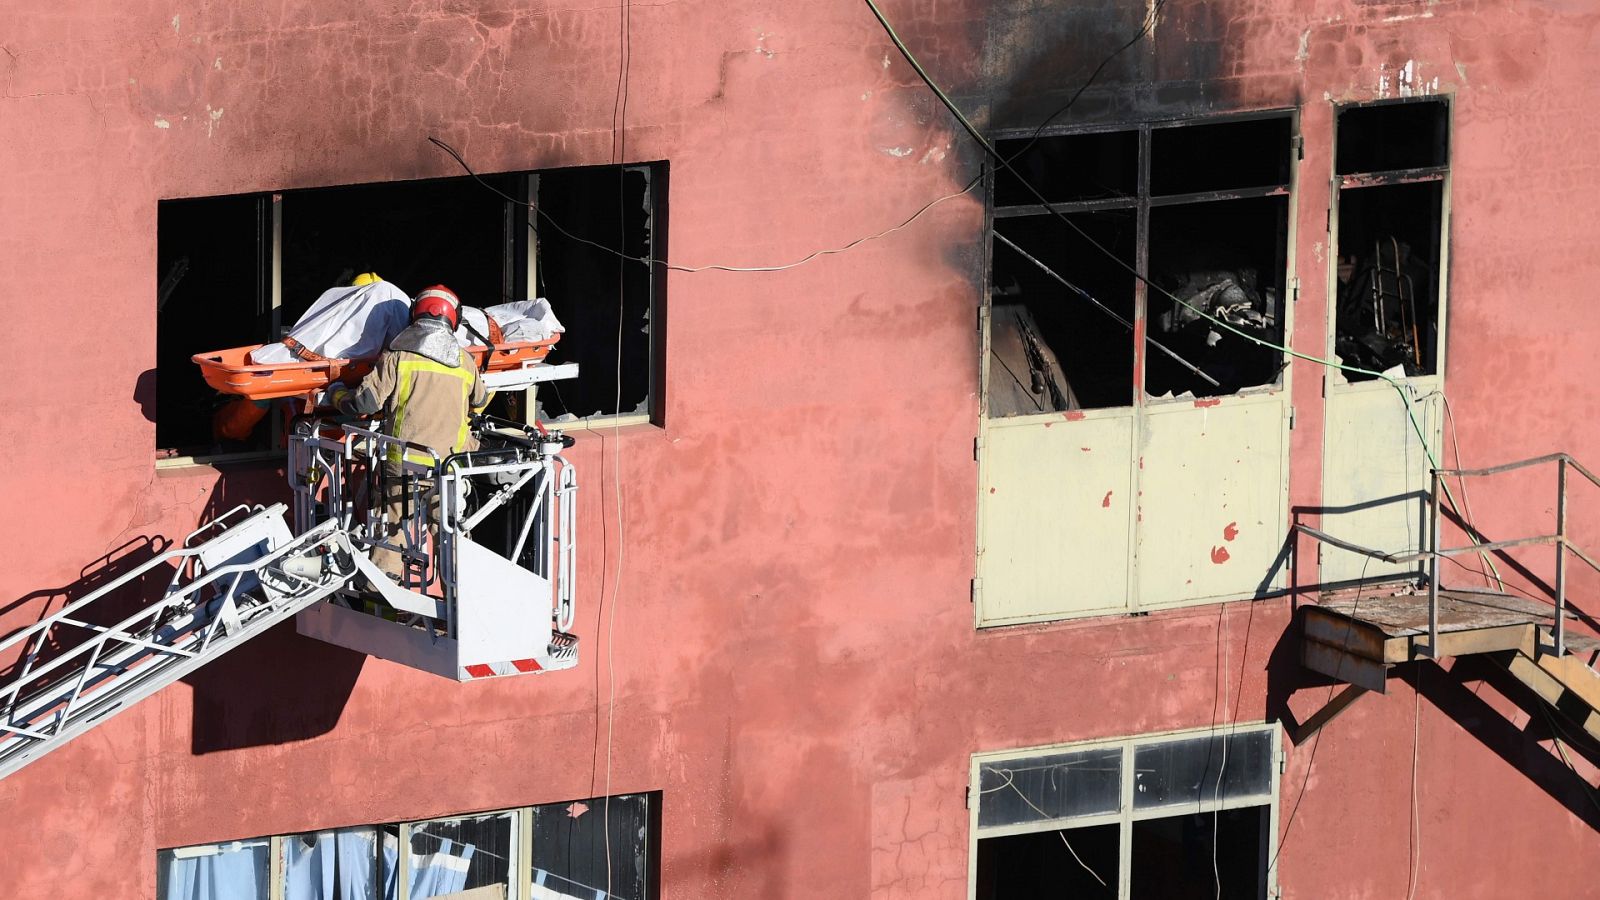 El incendio en la nave de Badalona deja al menos tres muertos y siete heridos graves